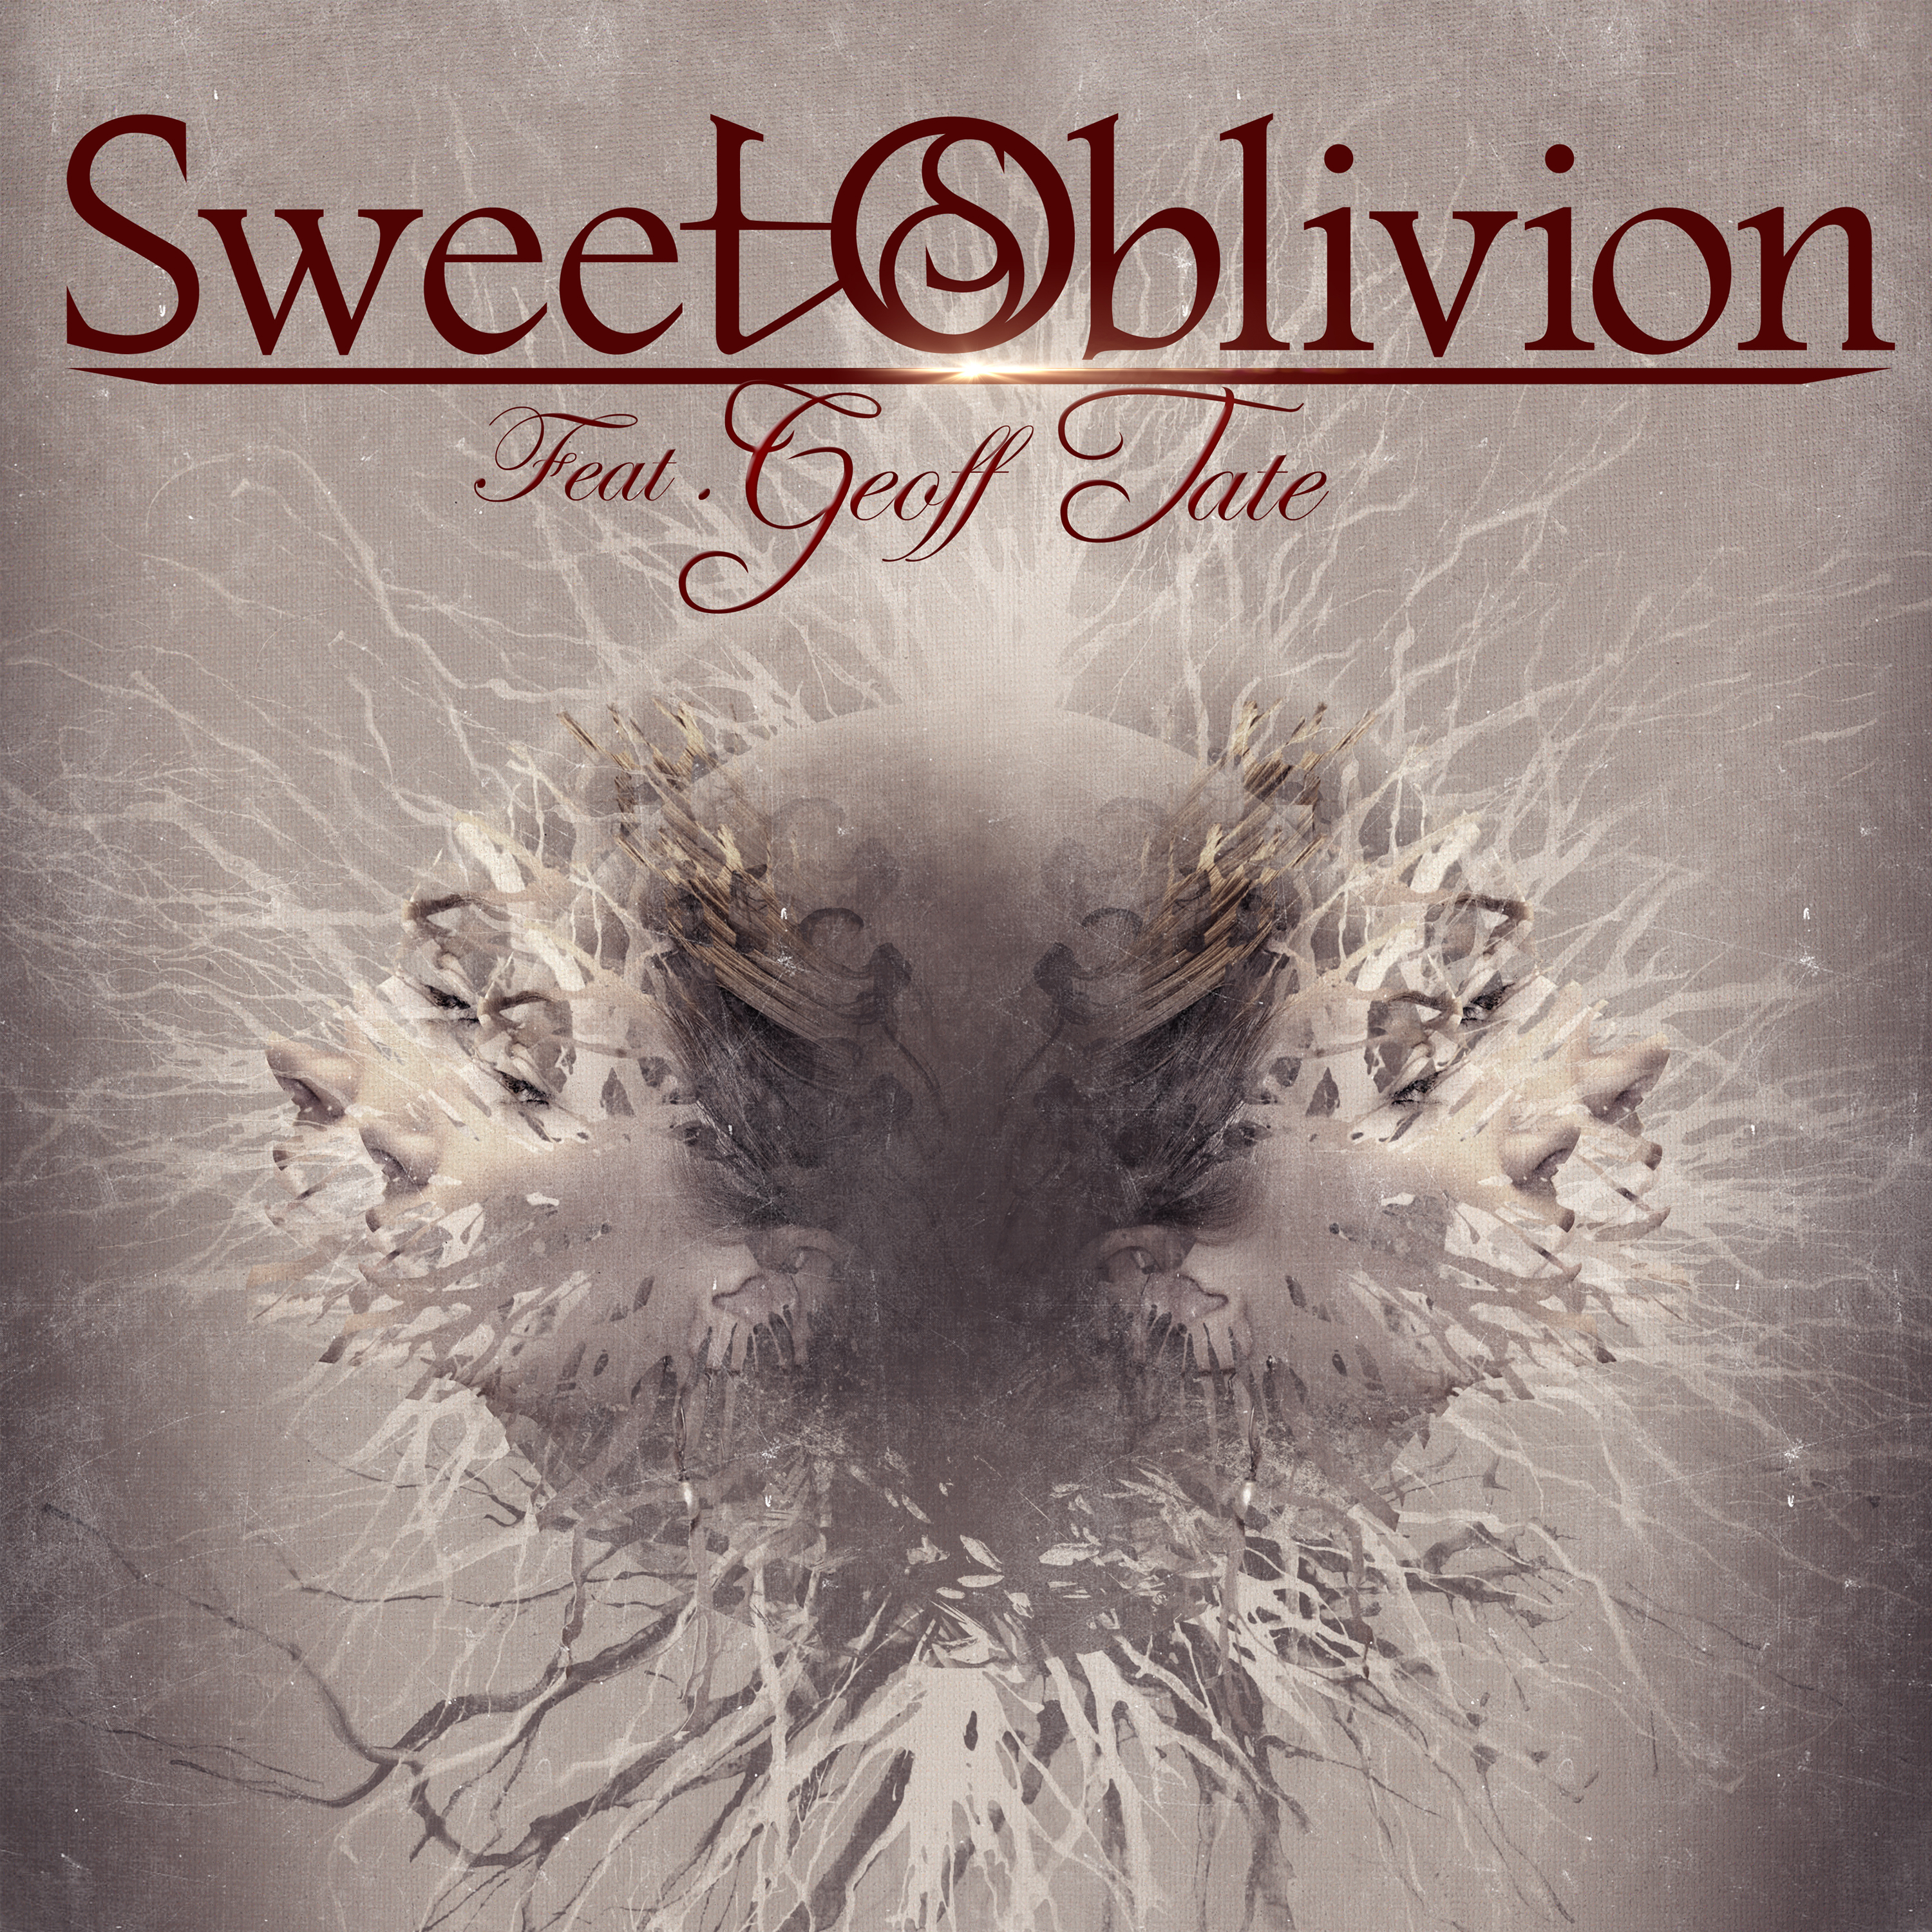 Sweet Oblivion feat. Geoff Tate - Sweet Oblivion (feat. Geoff Tate) - CD